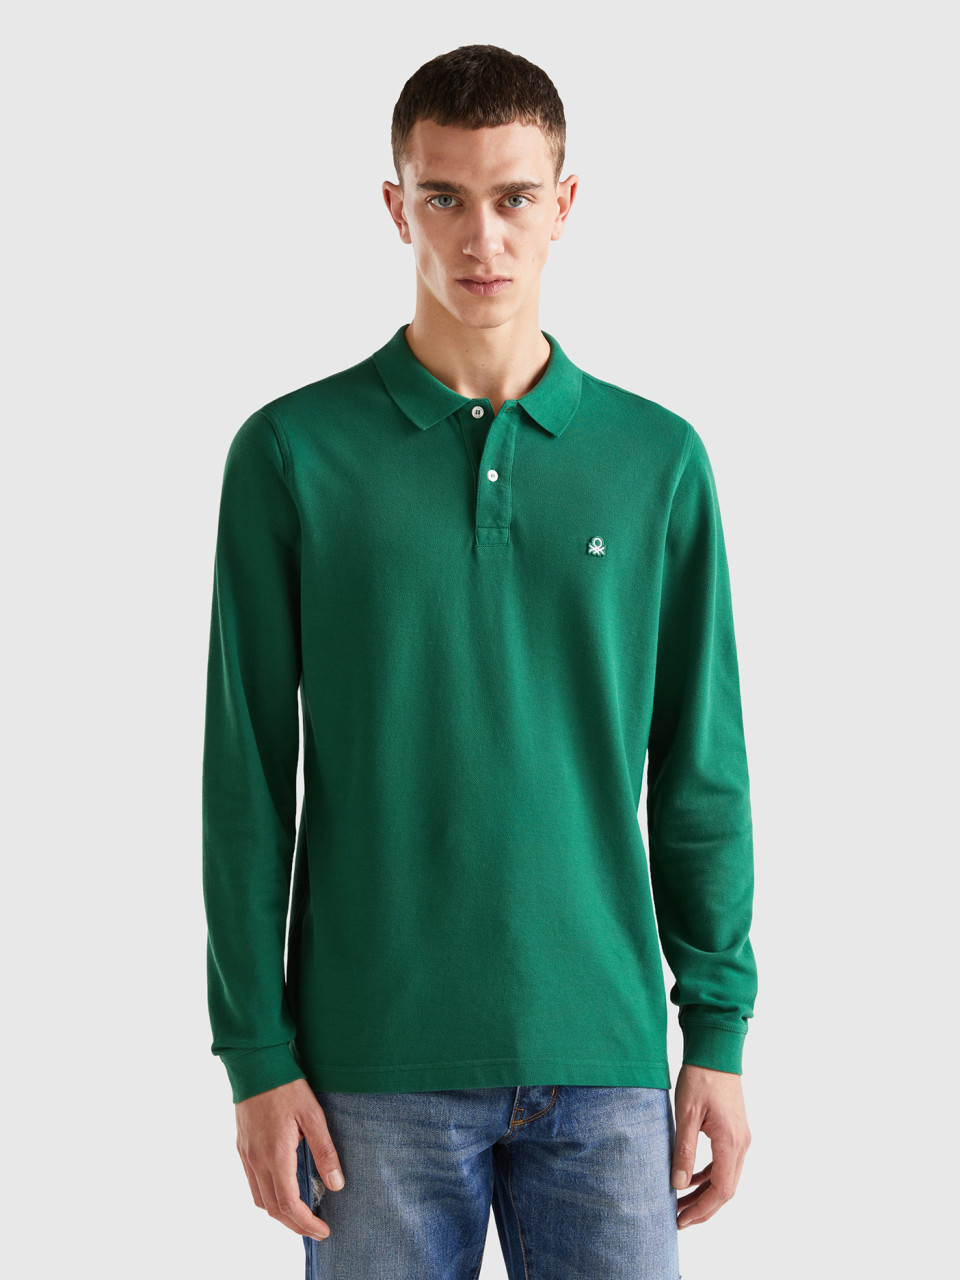 Benetton, Long Sleeve 100% Cotton Polo, Dark Green, Men